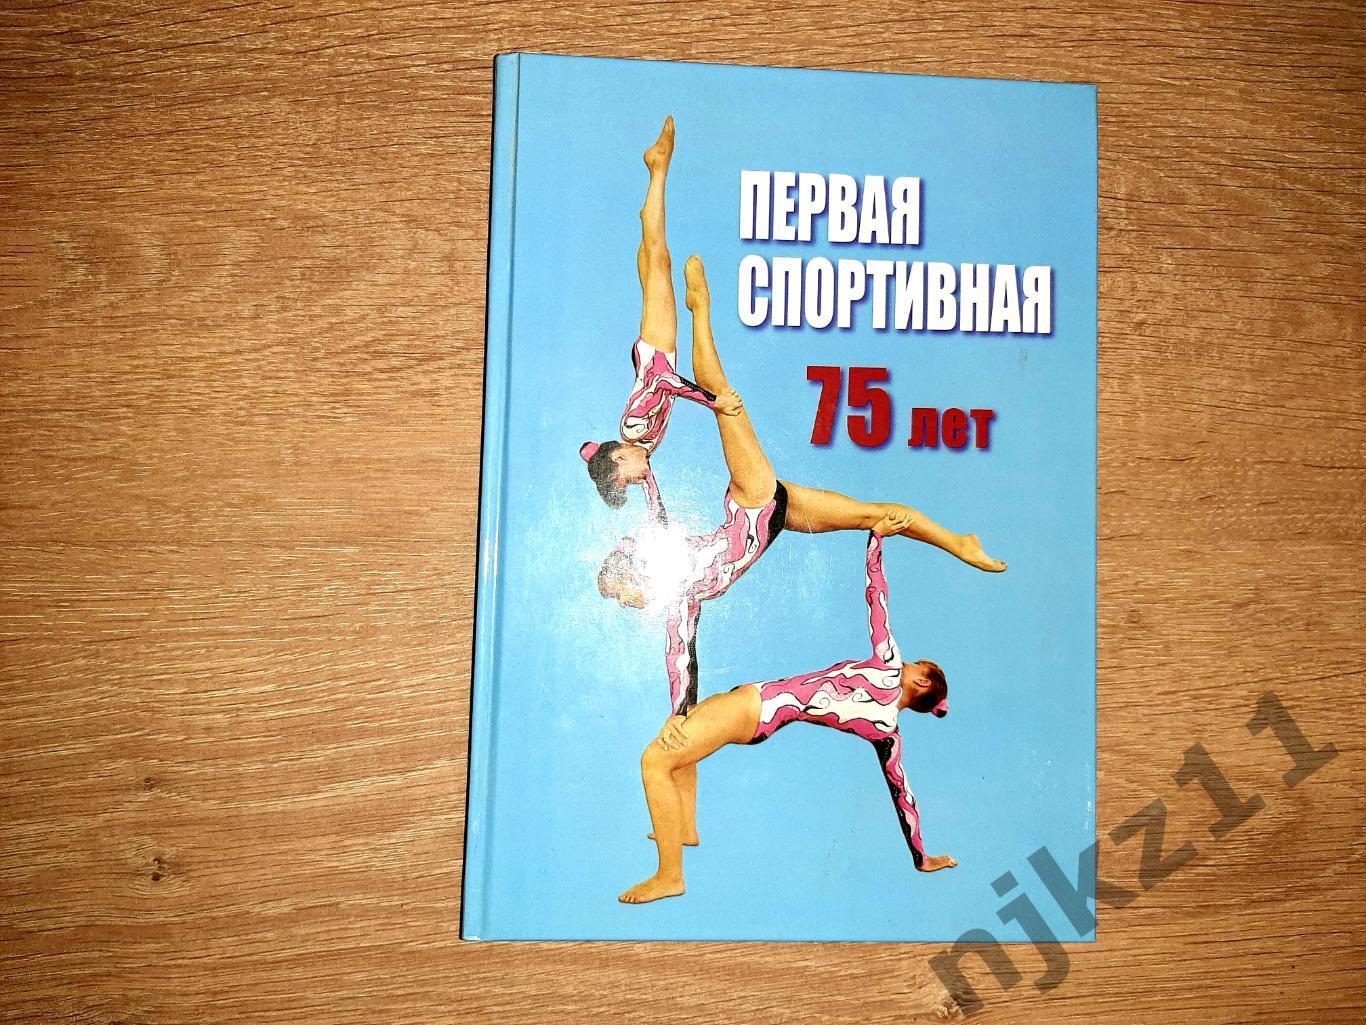 Первая спортивная Чудиновских 2011г акробатика